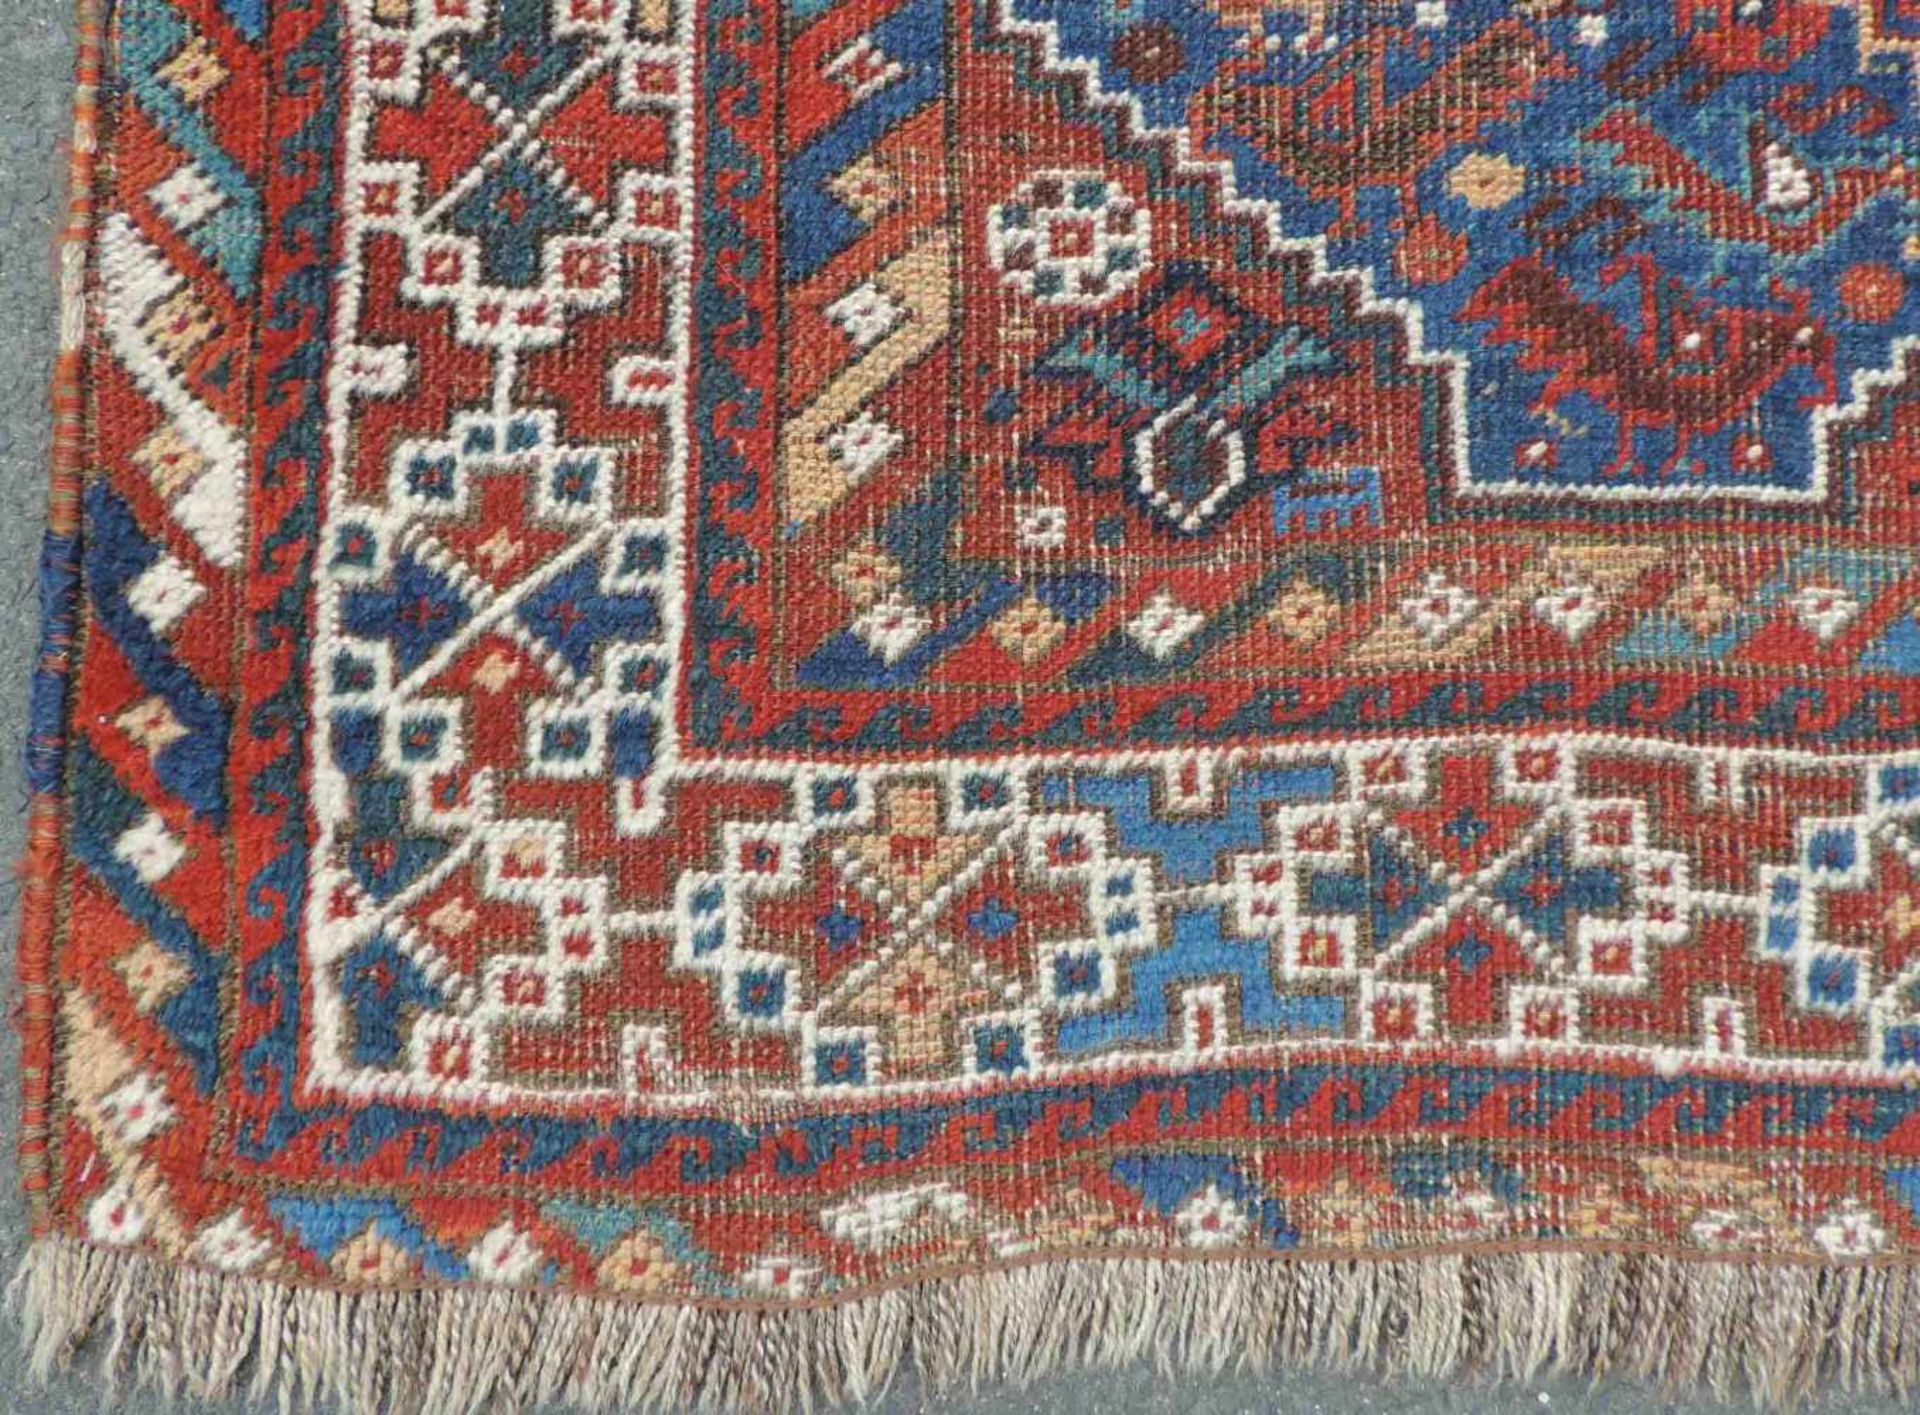 Schiraz Stammesteppich. Iran, alt um 1910. 165 cm x 110 cm. Handgeknüpft. Wolle auf Wolle. - Bild 2 aus 7